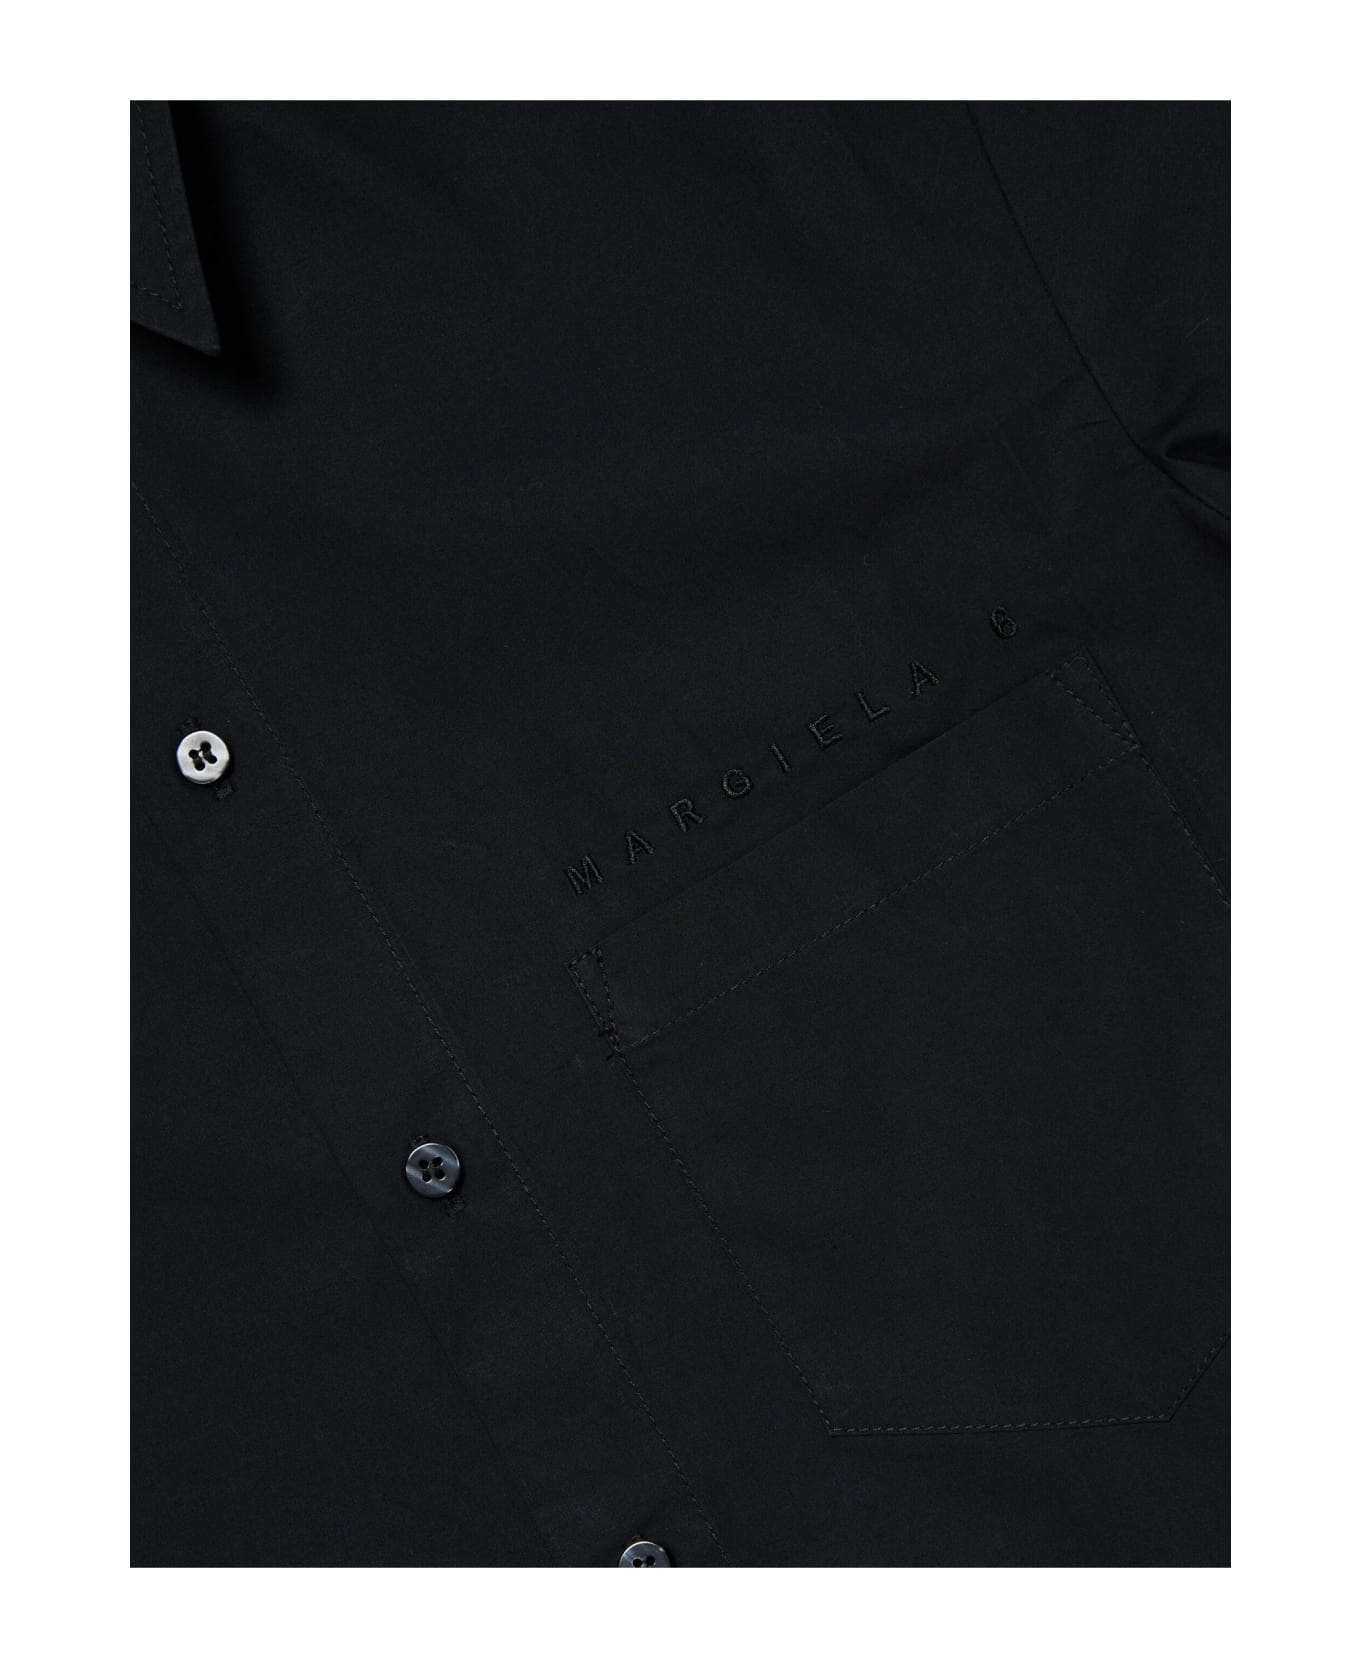 Maison Margiela Shirts Black - Black